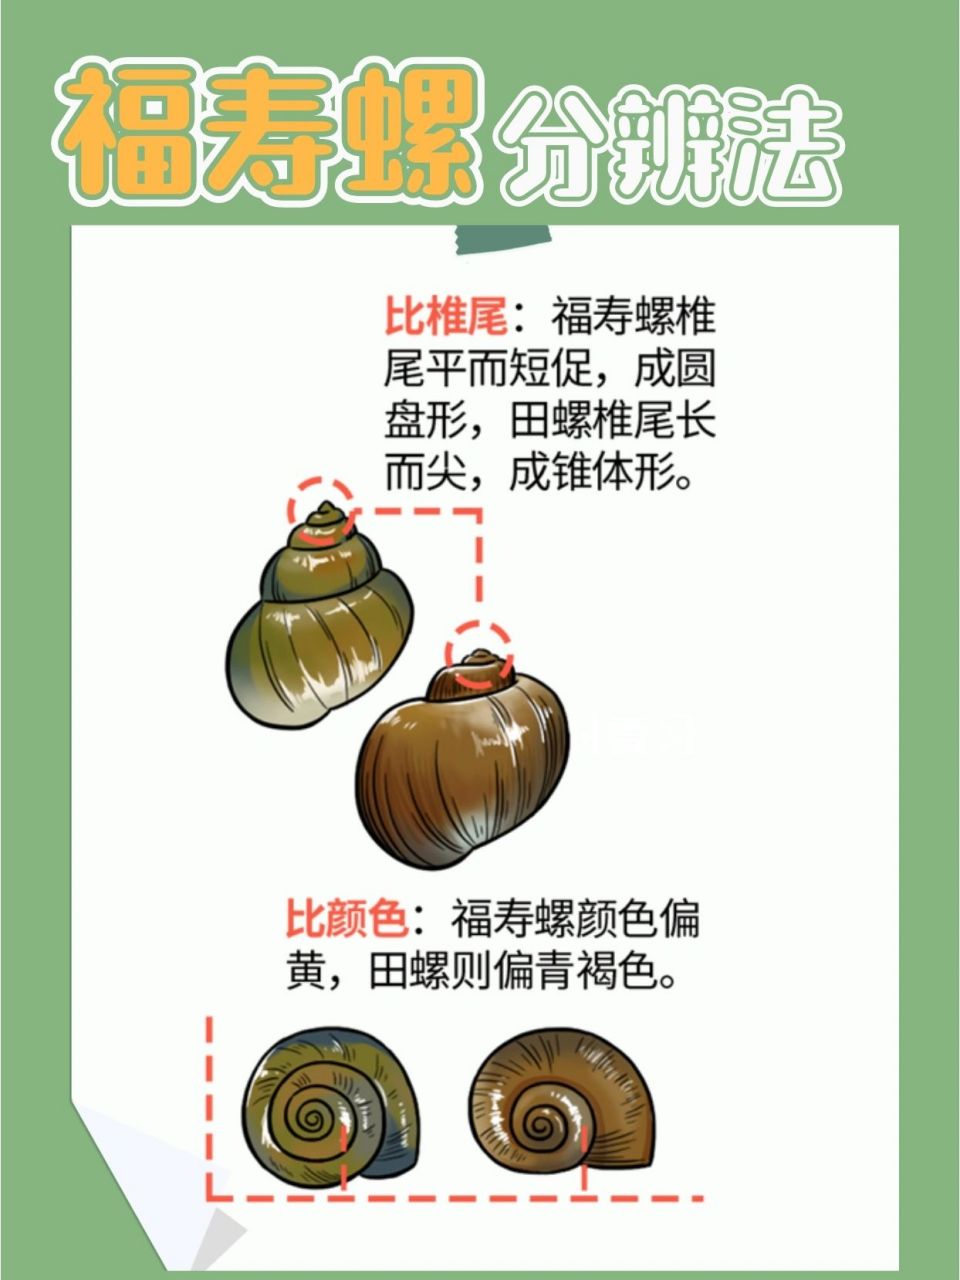 怎样区分福寿螺和田螺?